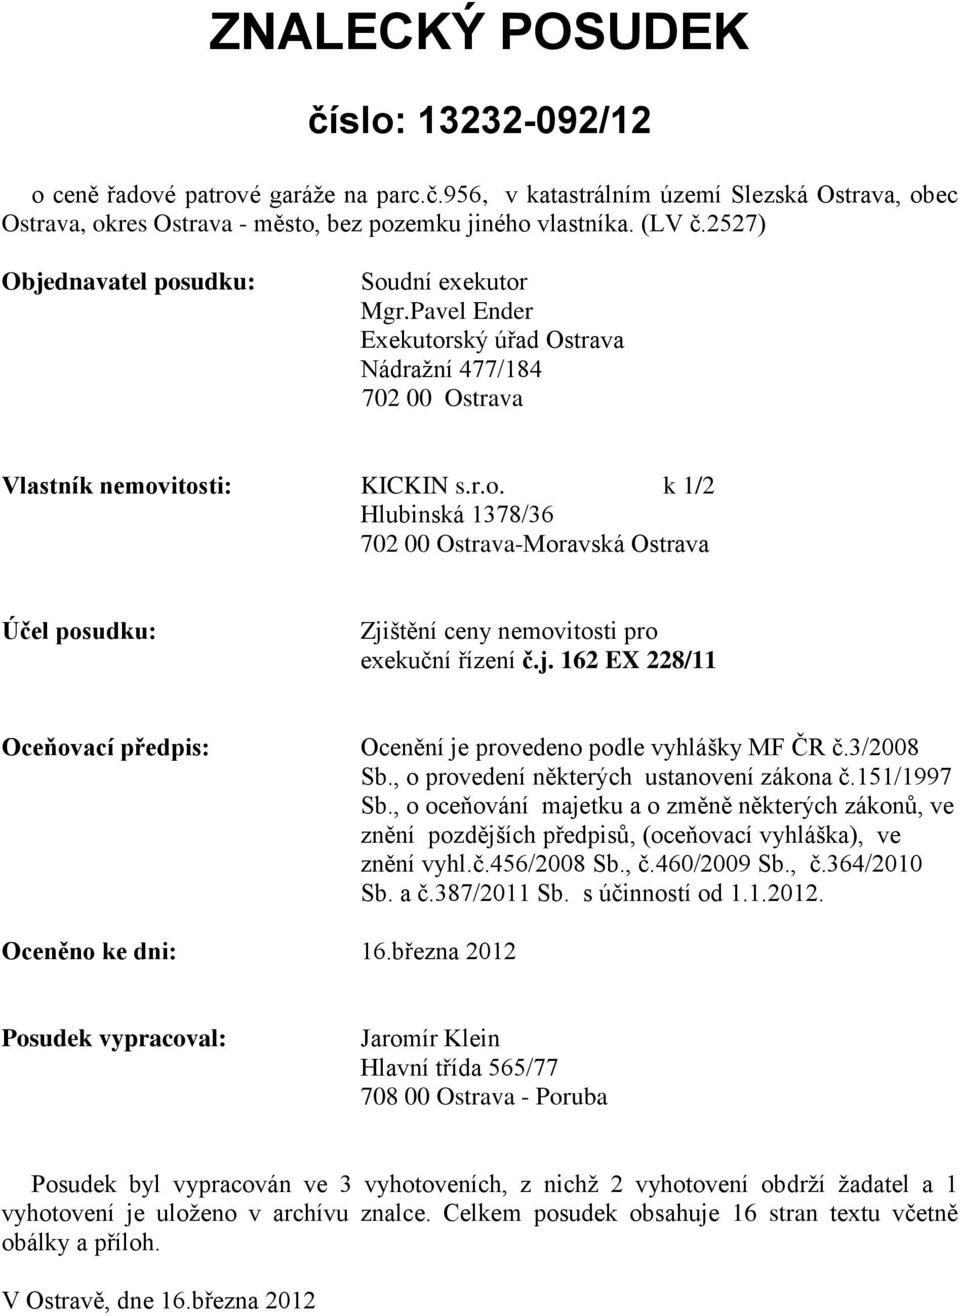 j. 162 EX 228/11 Oceňovací předpis: Ocenění je provedeno podle vyhlášky MF ČR č.3/2008 Sb., o provedení některých ustanovení zákona č.151/1997 Sb.